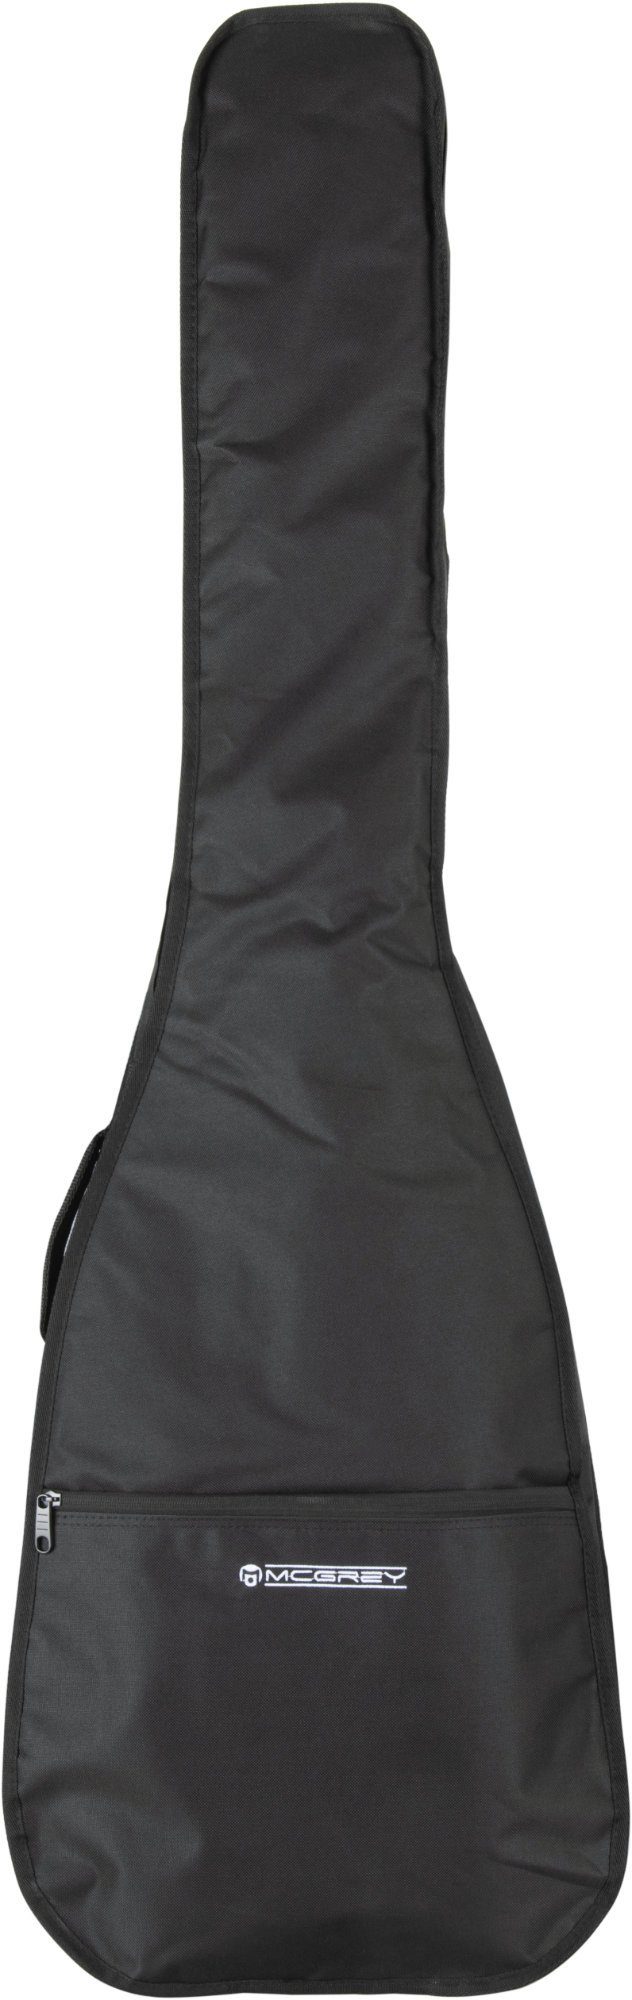 McGrey Gitarrentasche EBEB-1222BK E-Basstasche Schwarz, gepolsterte E-Basstasche aus Nylon mit verstellbaren Rucksackgurten